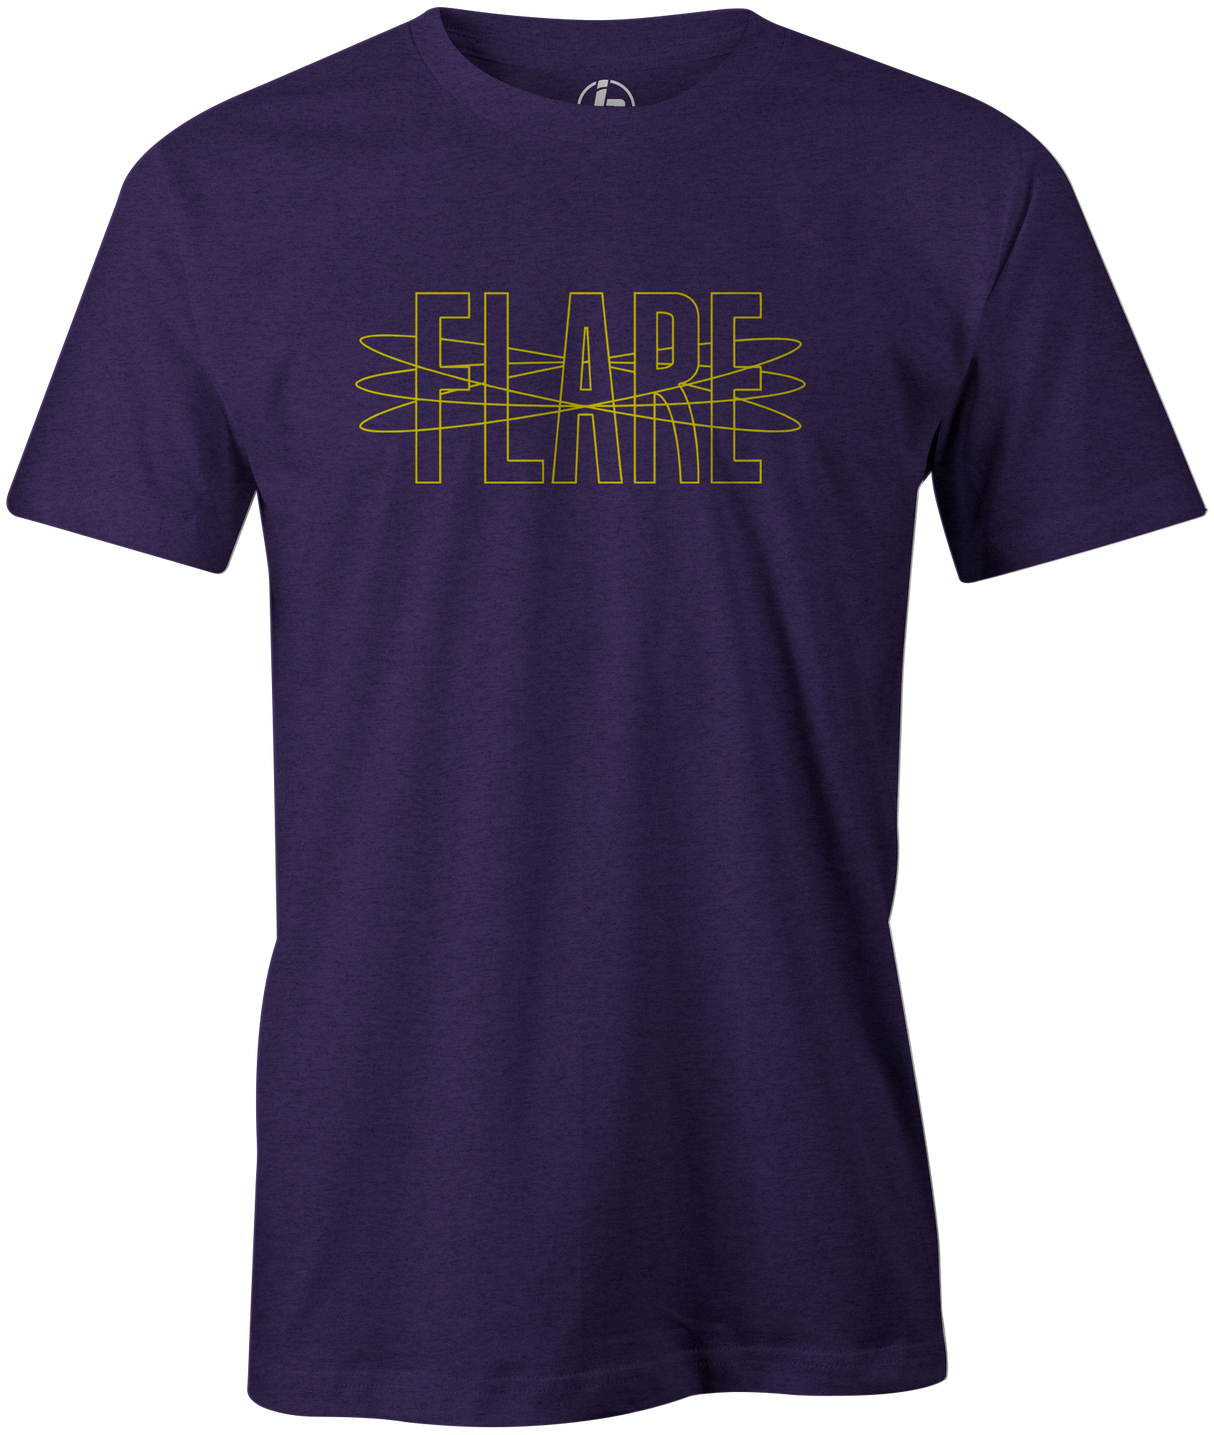 Track Flare Men's T-Shirt, Purple, track bowling, bowling ball, bowling ball logo, track, retro, old school, throwback, vintage, tshirt, tee, tee-shirt, tee shirt.